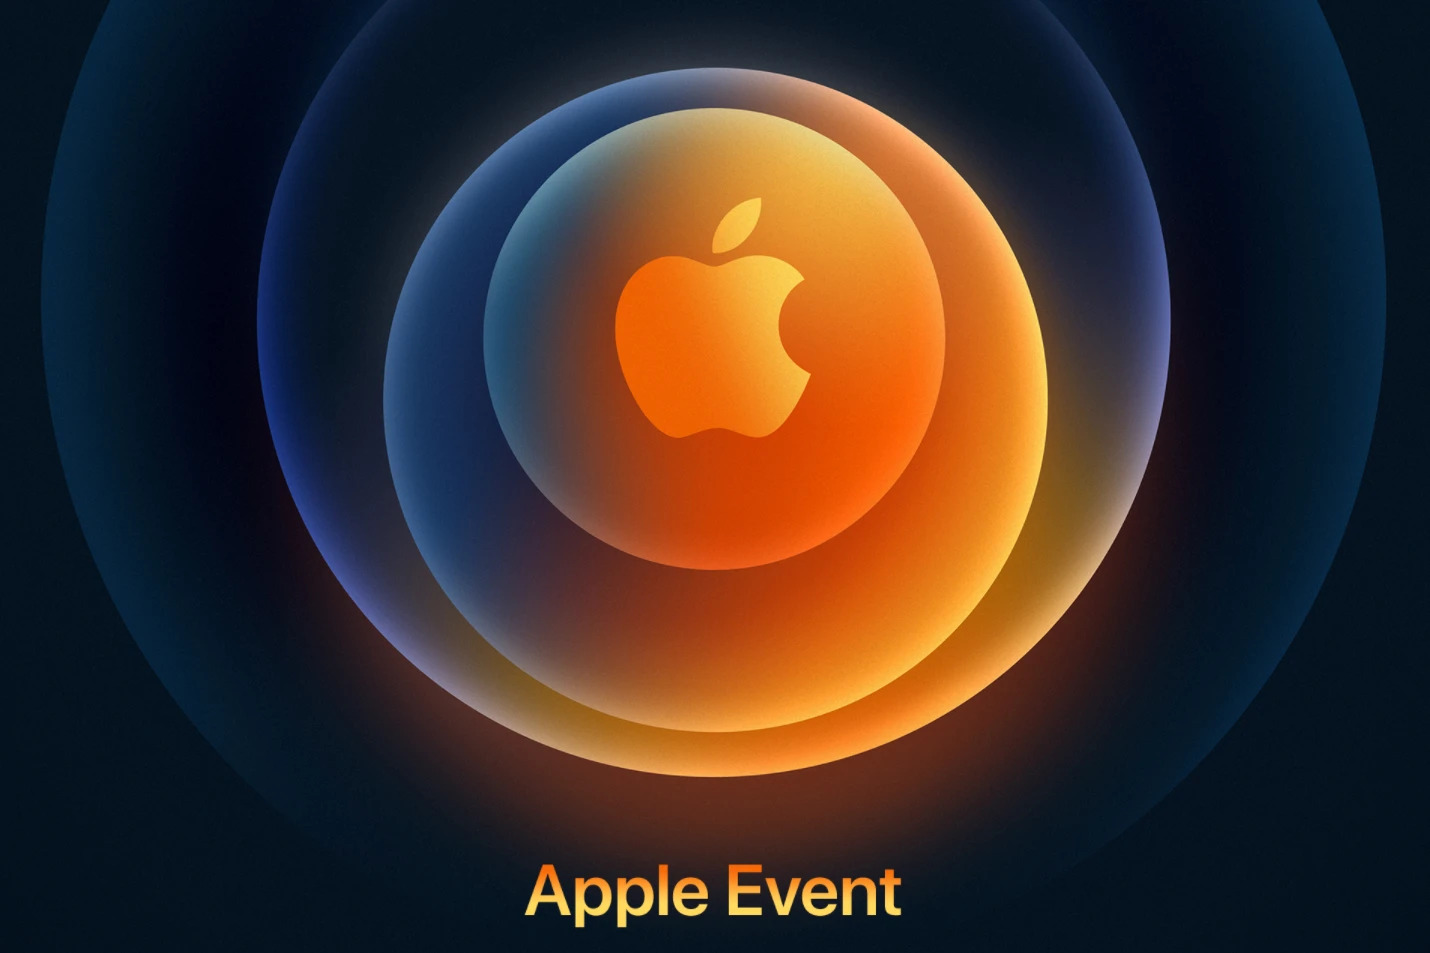 iPhone 12 lanuch event